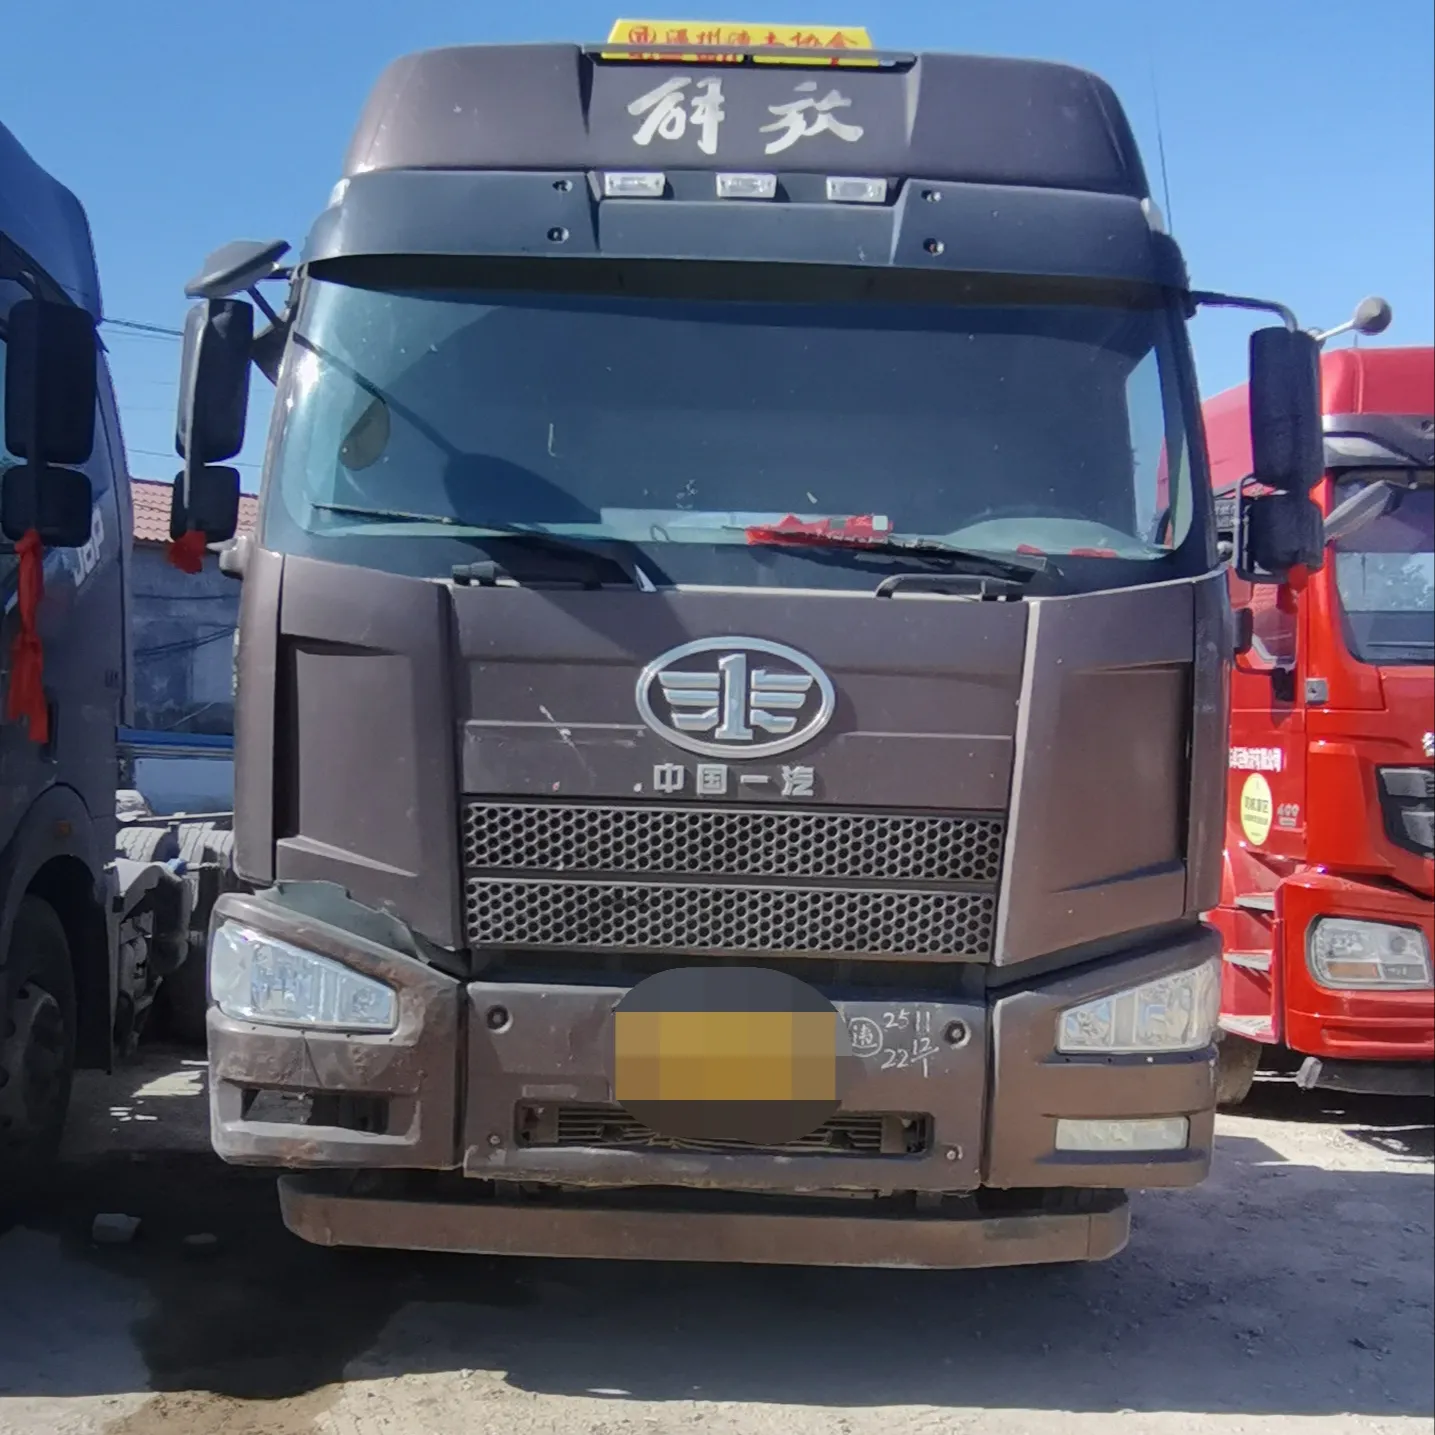 Tweedehands Vrachtwagen Jiefu J6p460 Pk Tractor Export Verkoop